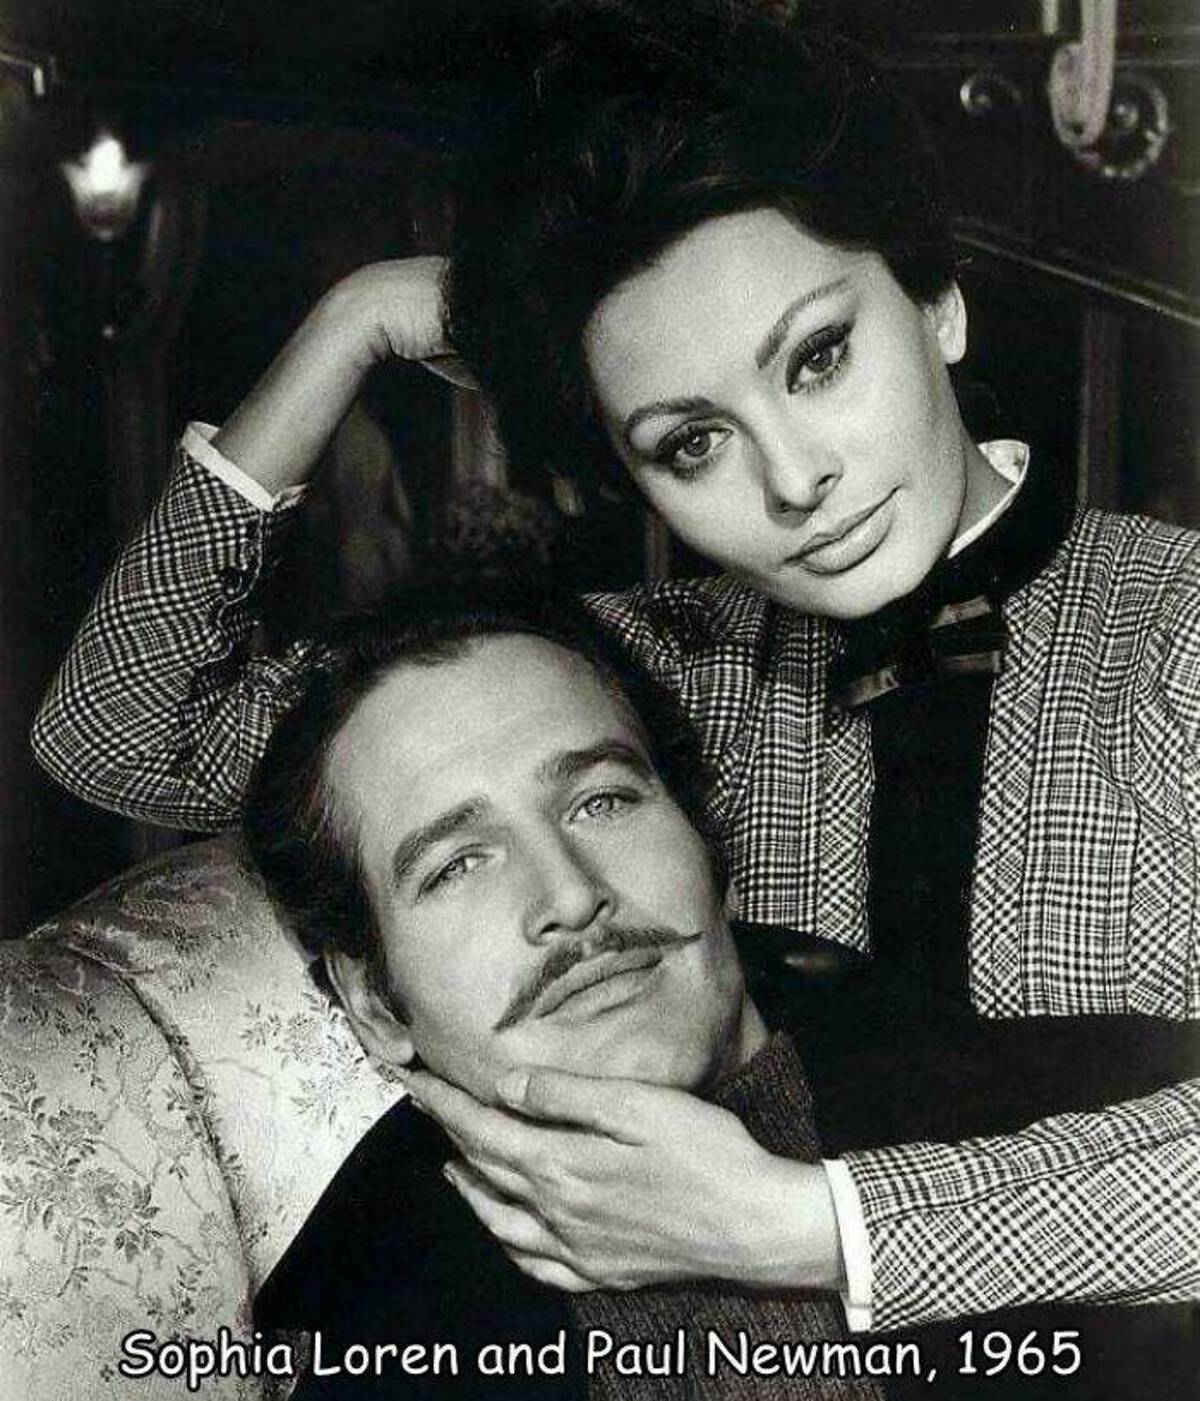 paul newman david niven - Sophia Loren and Paul Newman, 1965